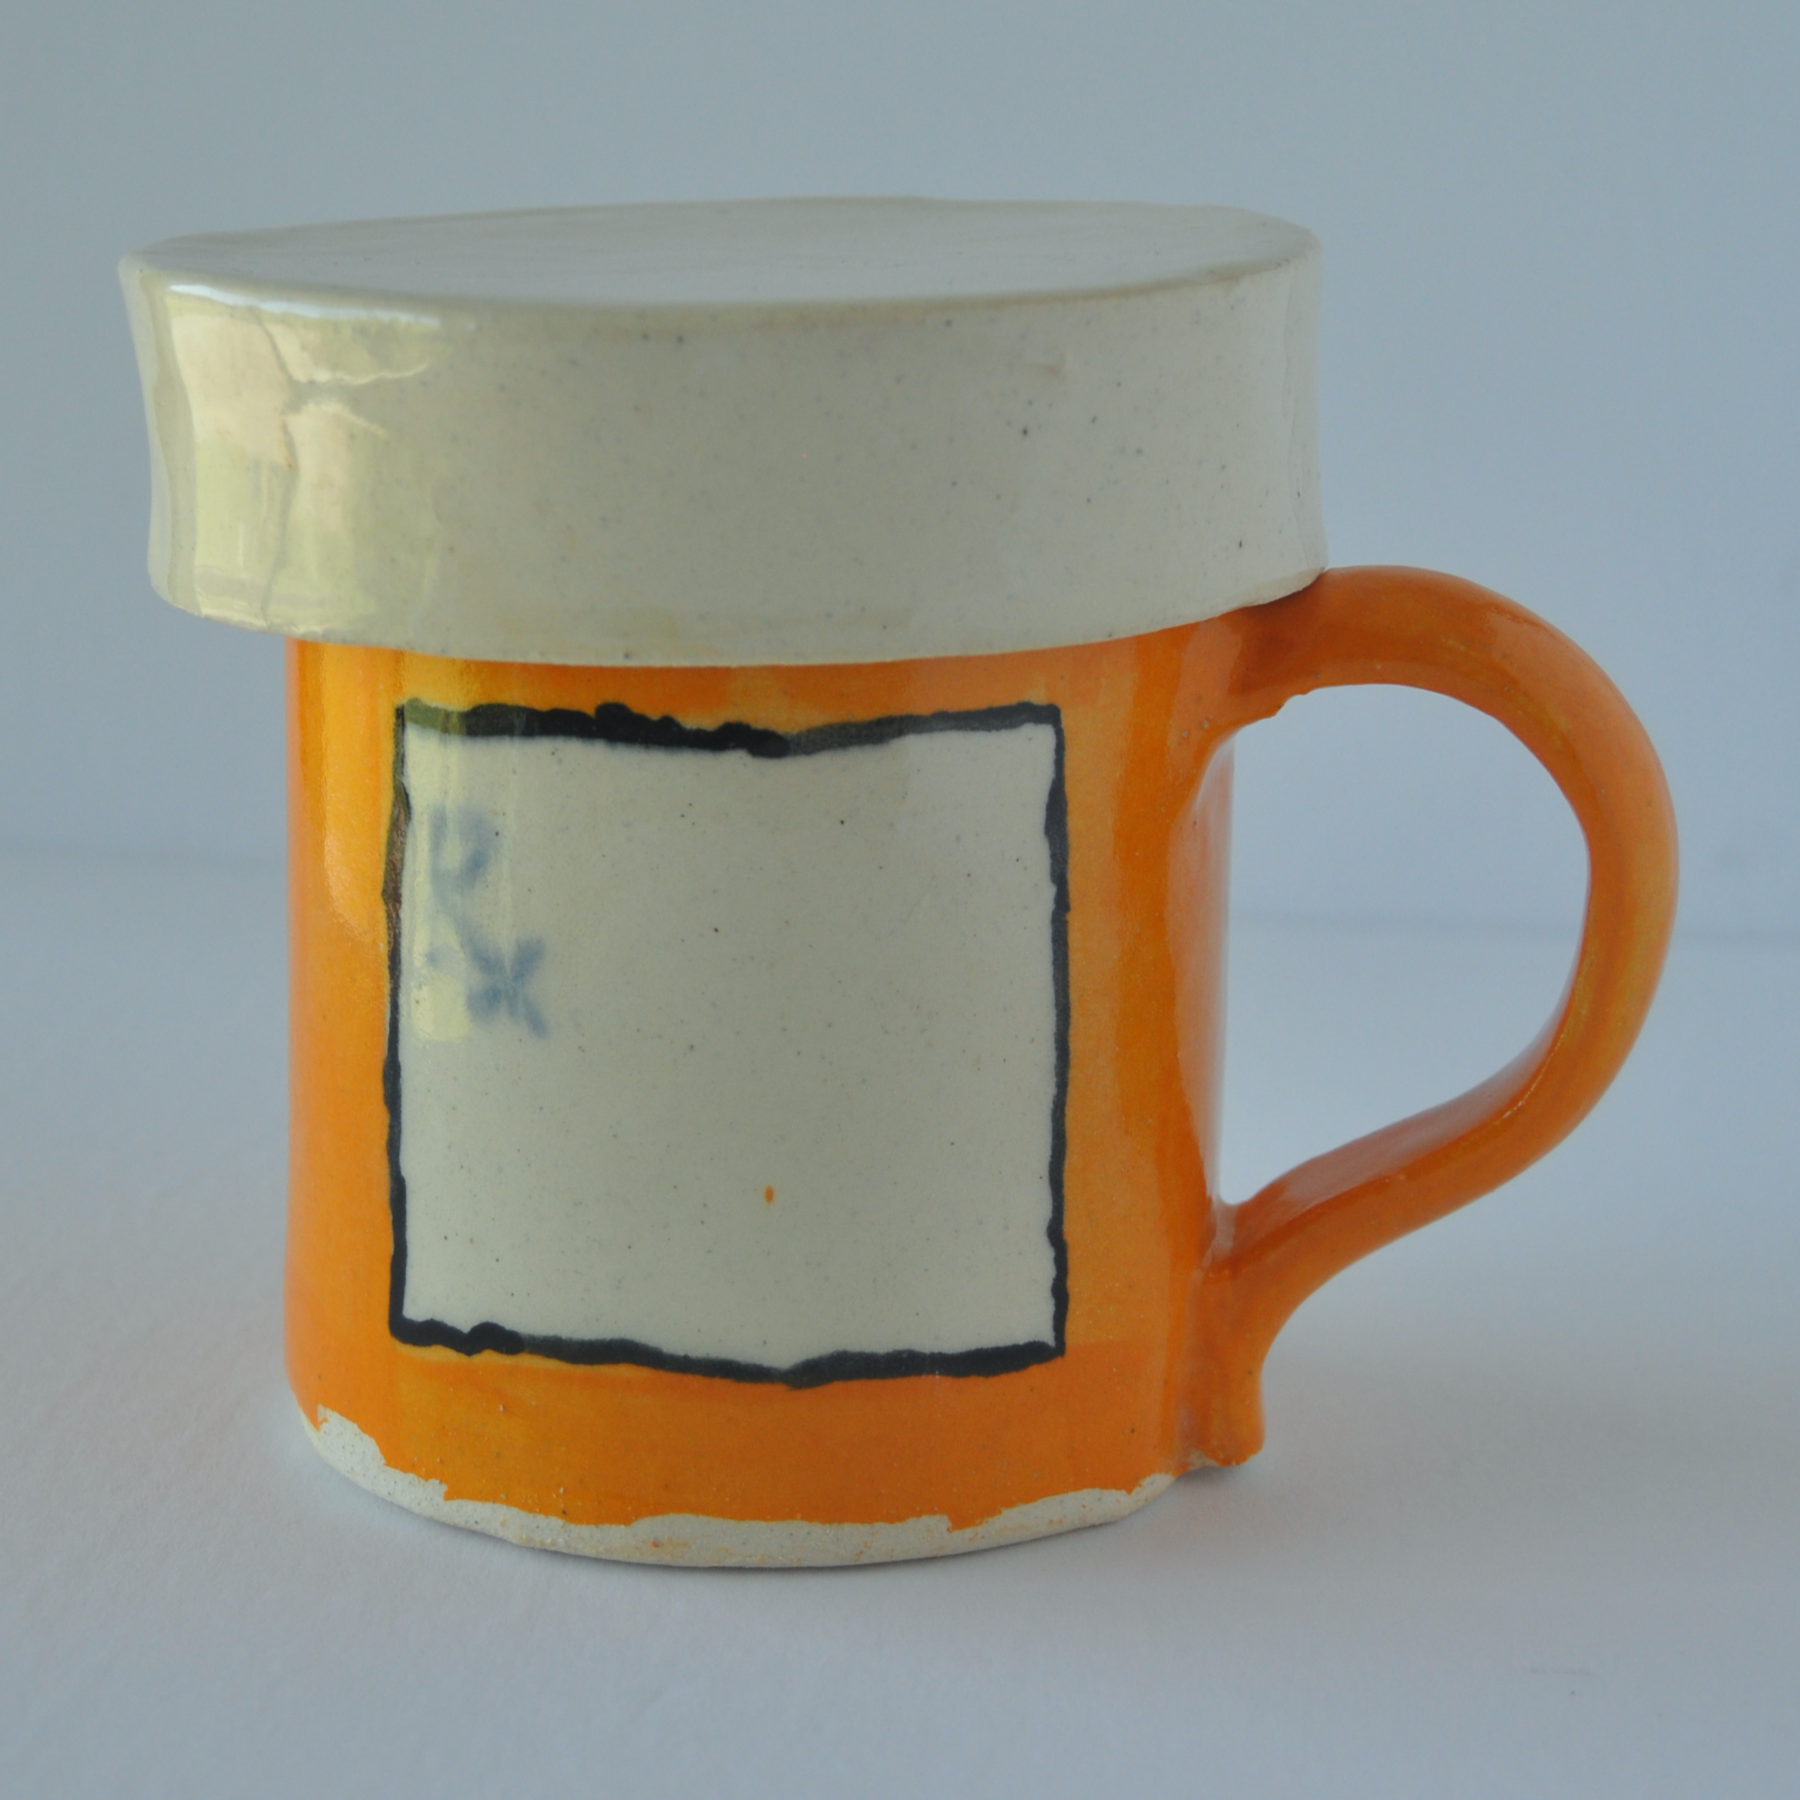 Ceramic prescription mug with lid